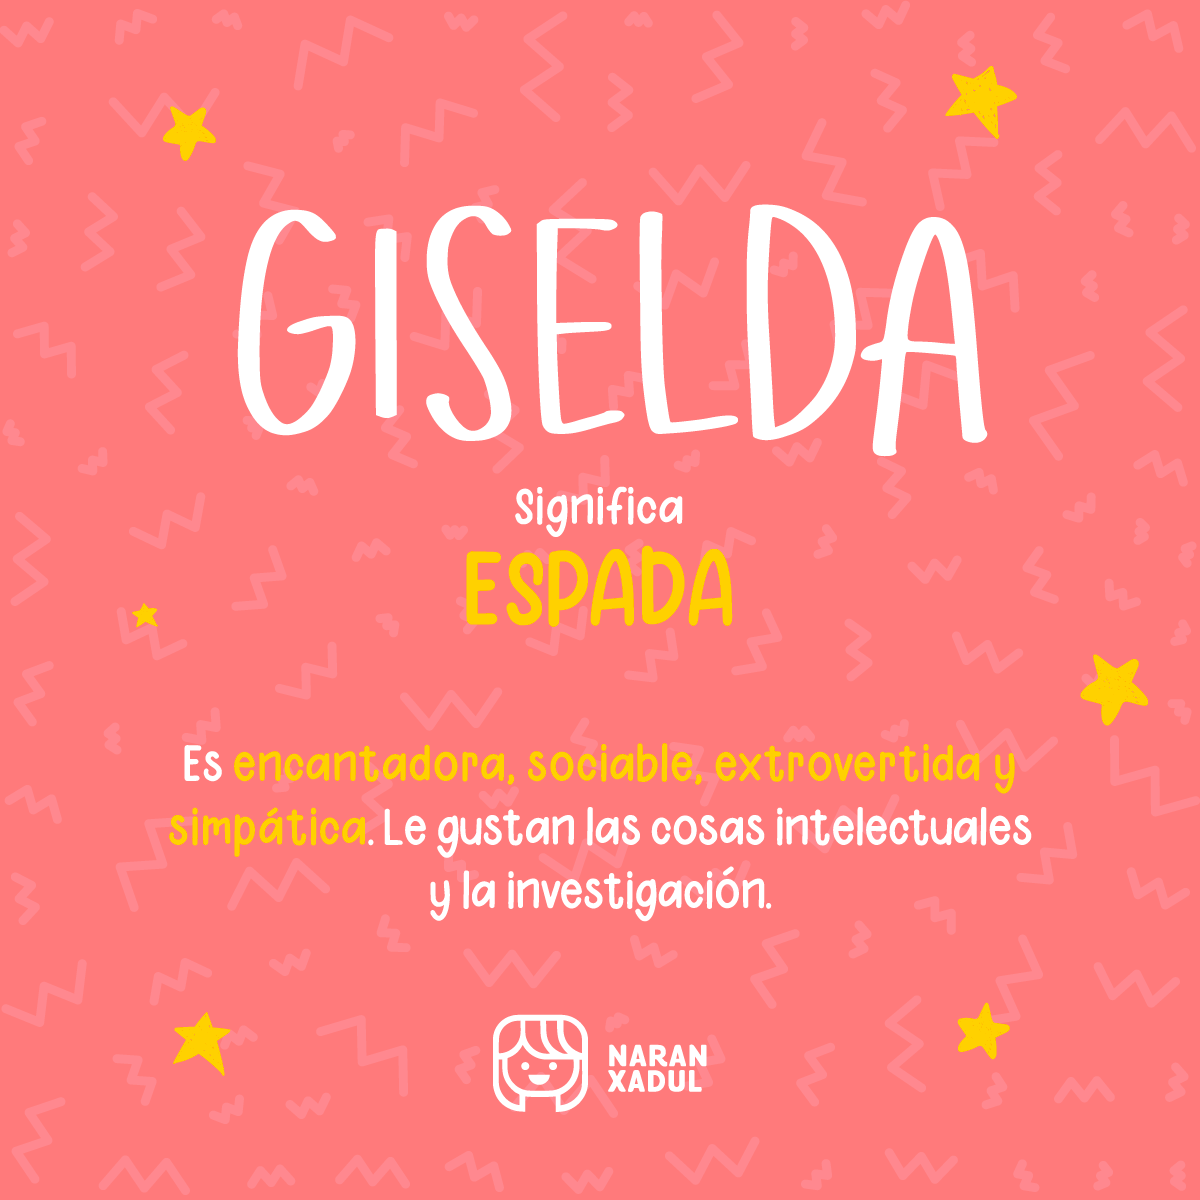 Significado de Giselda